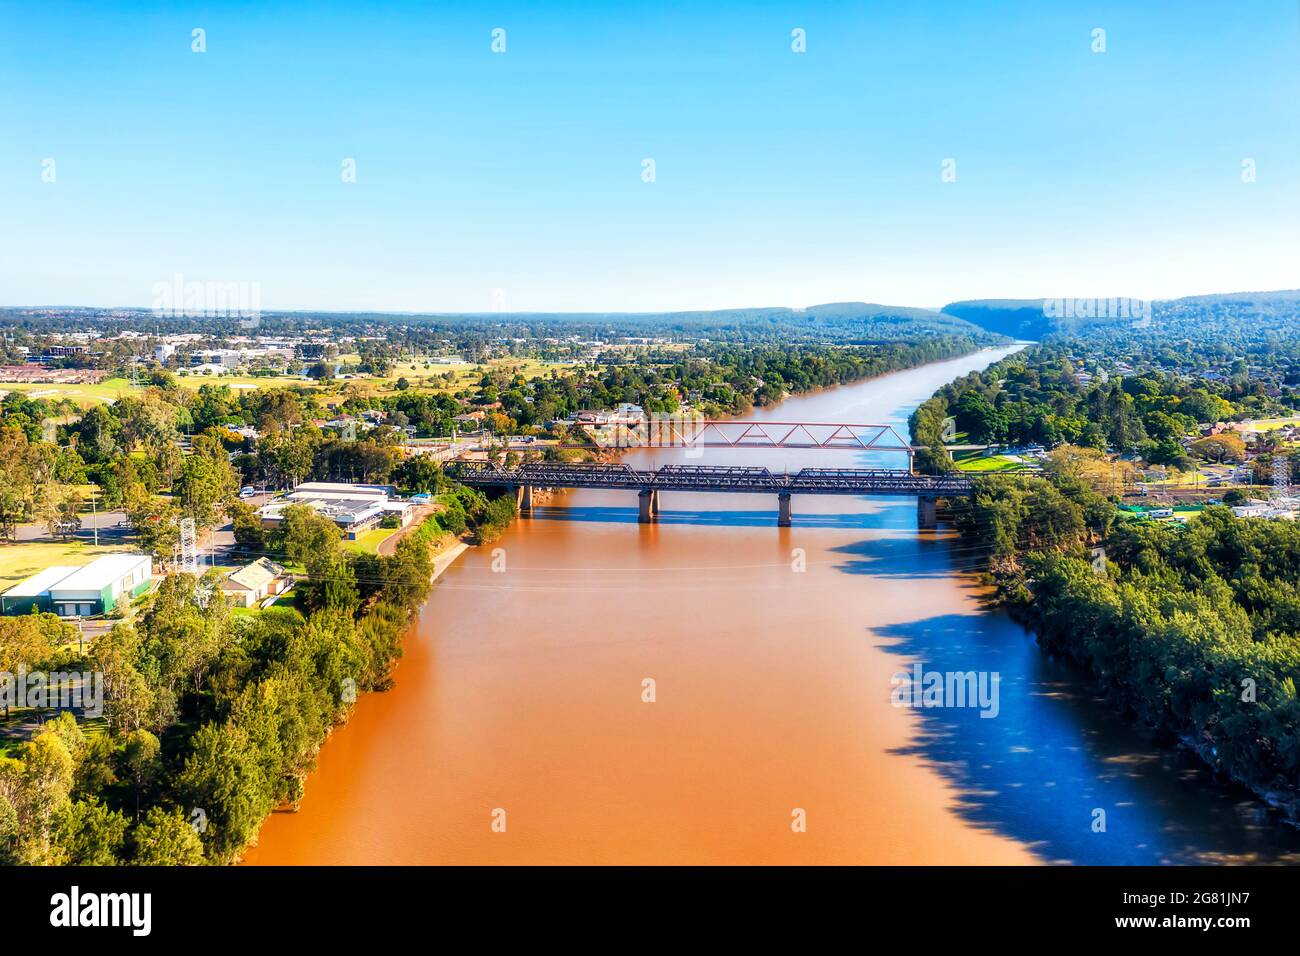 Gelbes, schlammiges Wasser des Nepean River in Penrith, der Stadt Greater Sydney - landschaftlich reizvoller Blick aus der Luft. Stockfoto